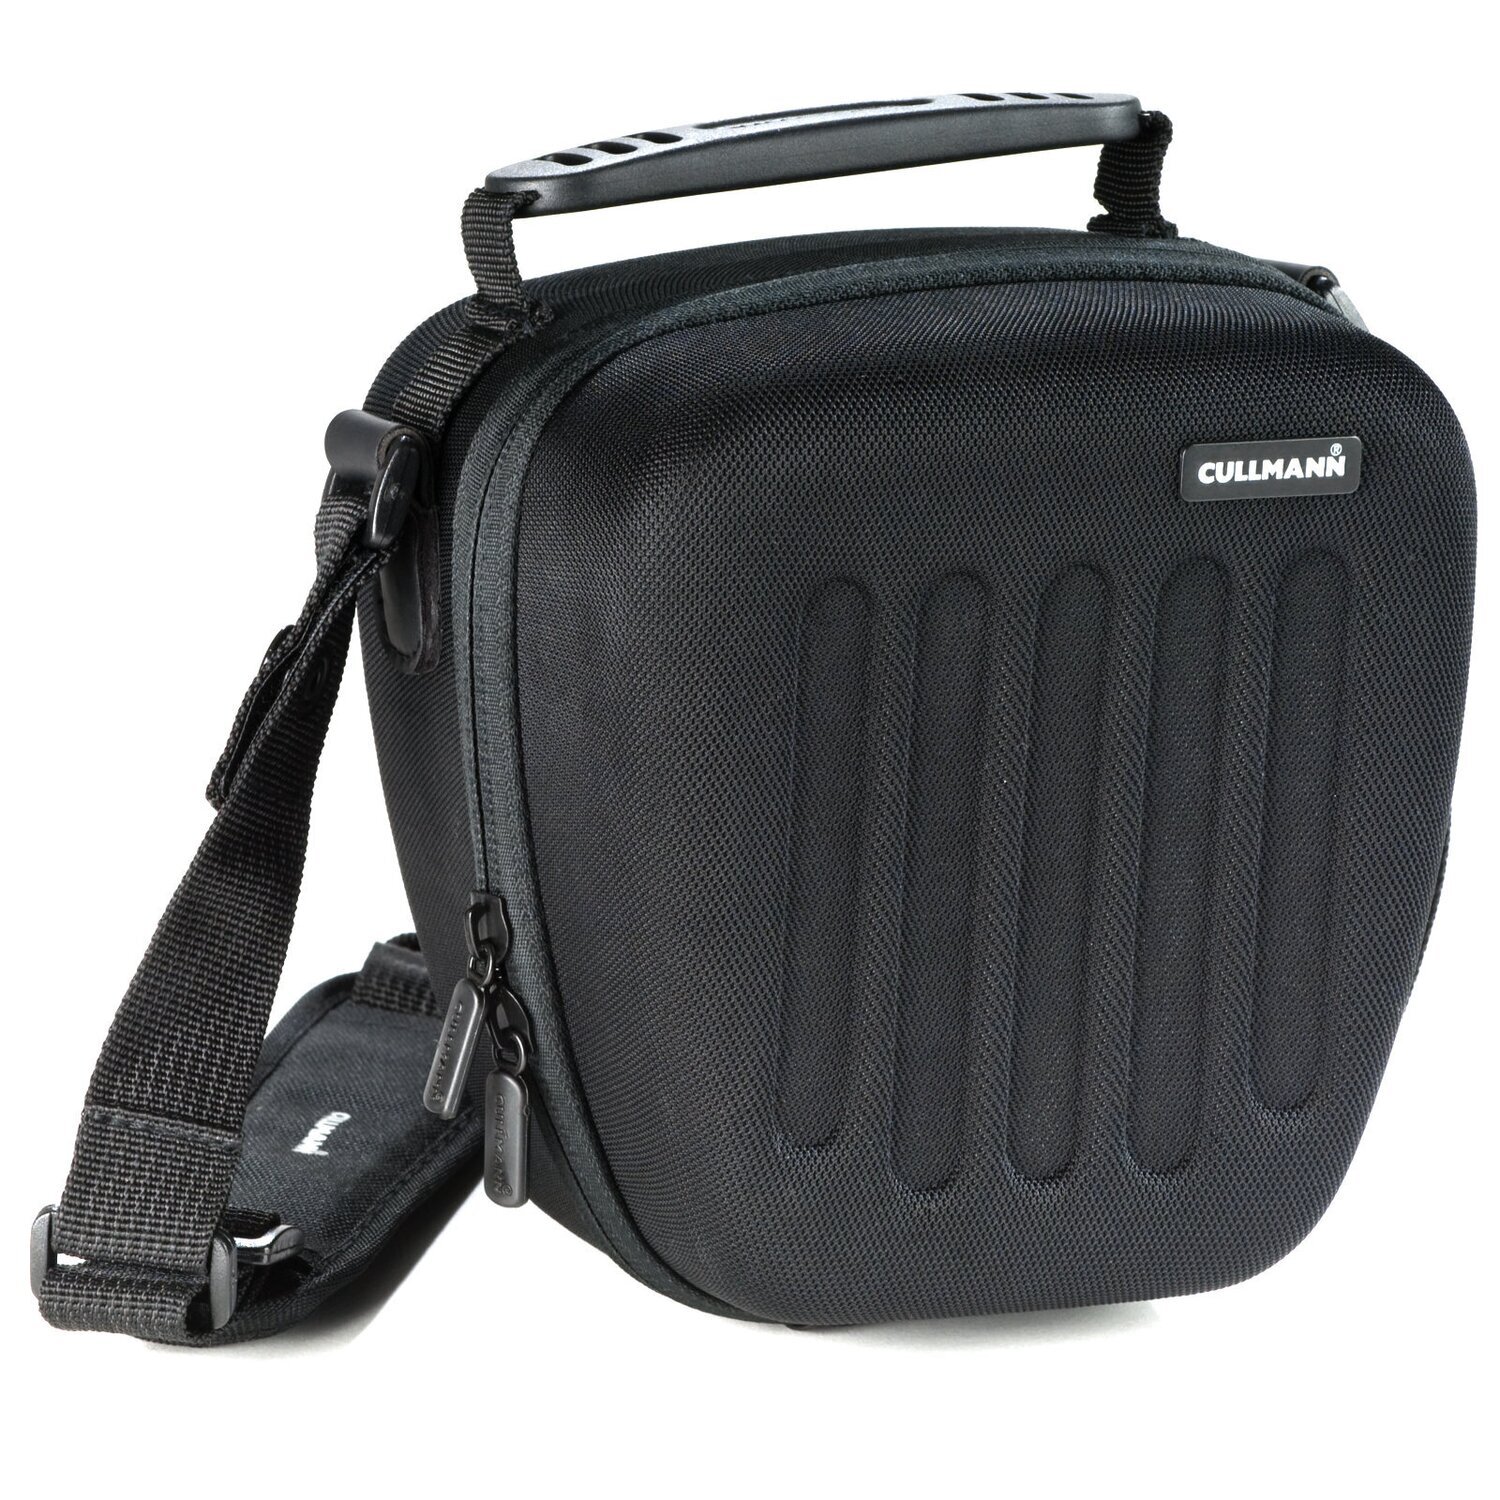 Hardcase Kameratasche passend für Nikon D5600 und 18-55mm Objektiv